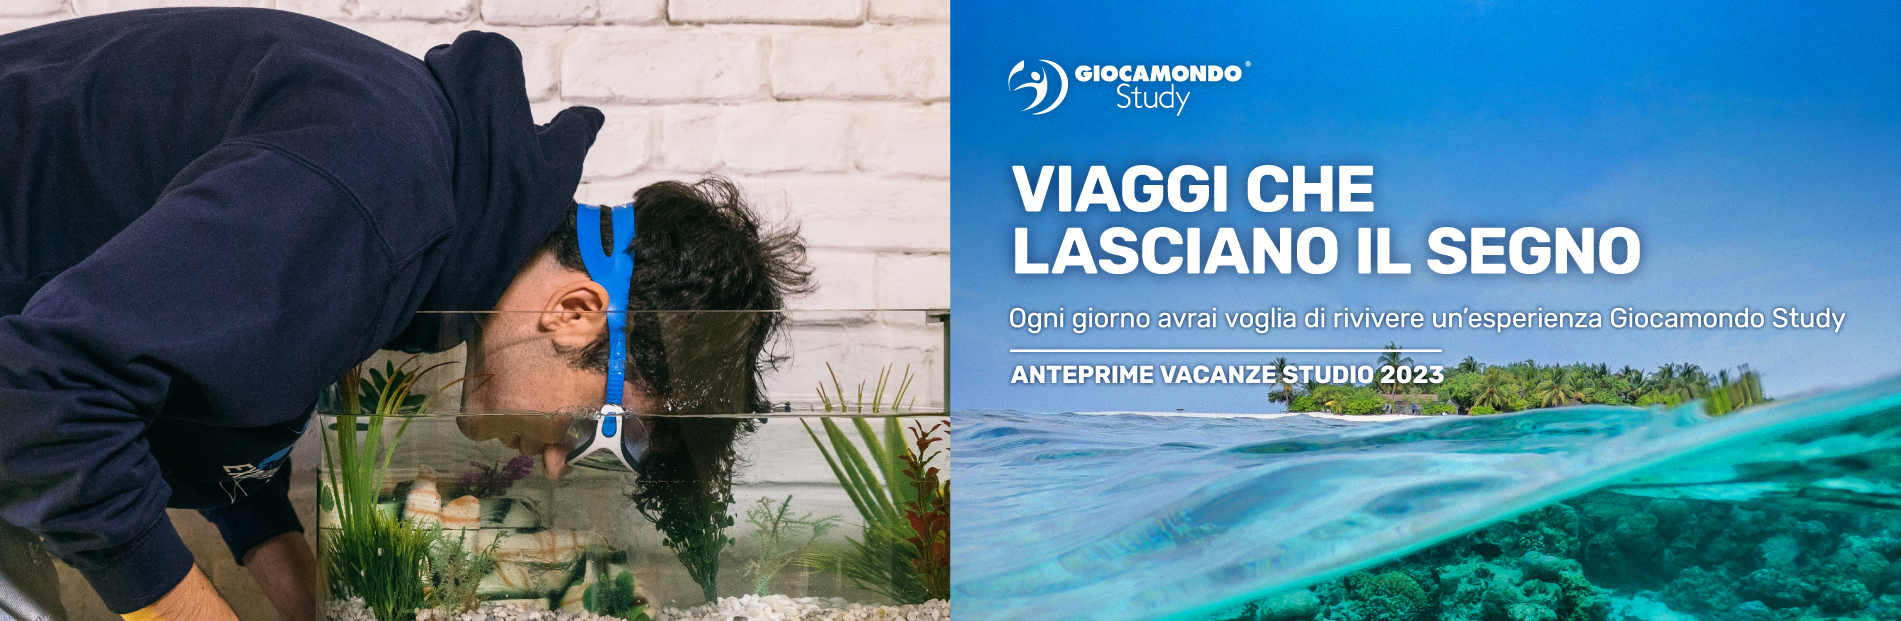 Vacanze Studio Estero ed Estate INPSieme 2022-Giocamondo_Campagna-2023_Visual-GS_1900x620